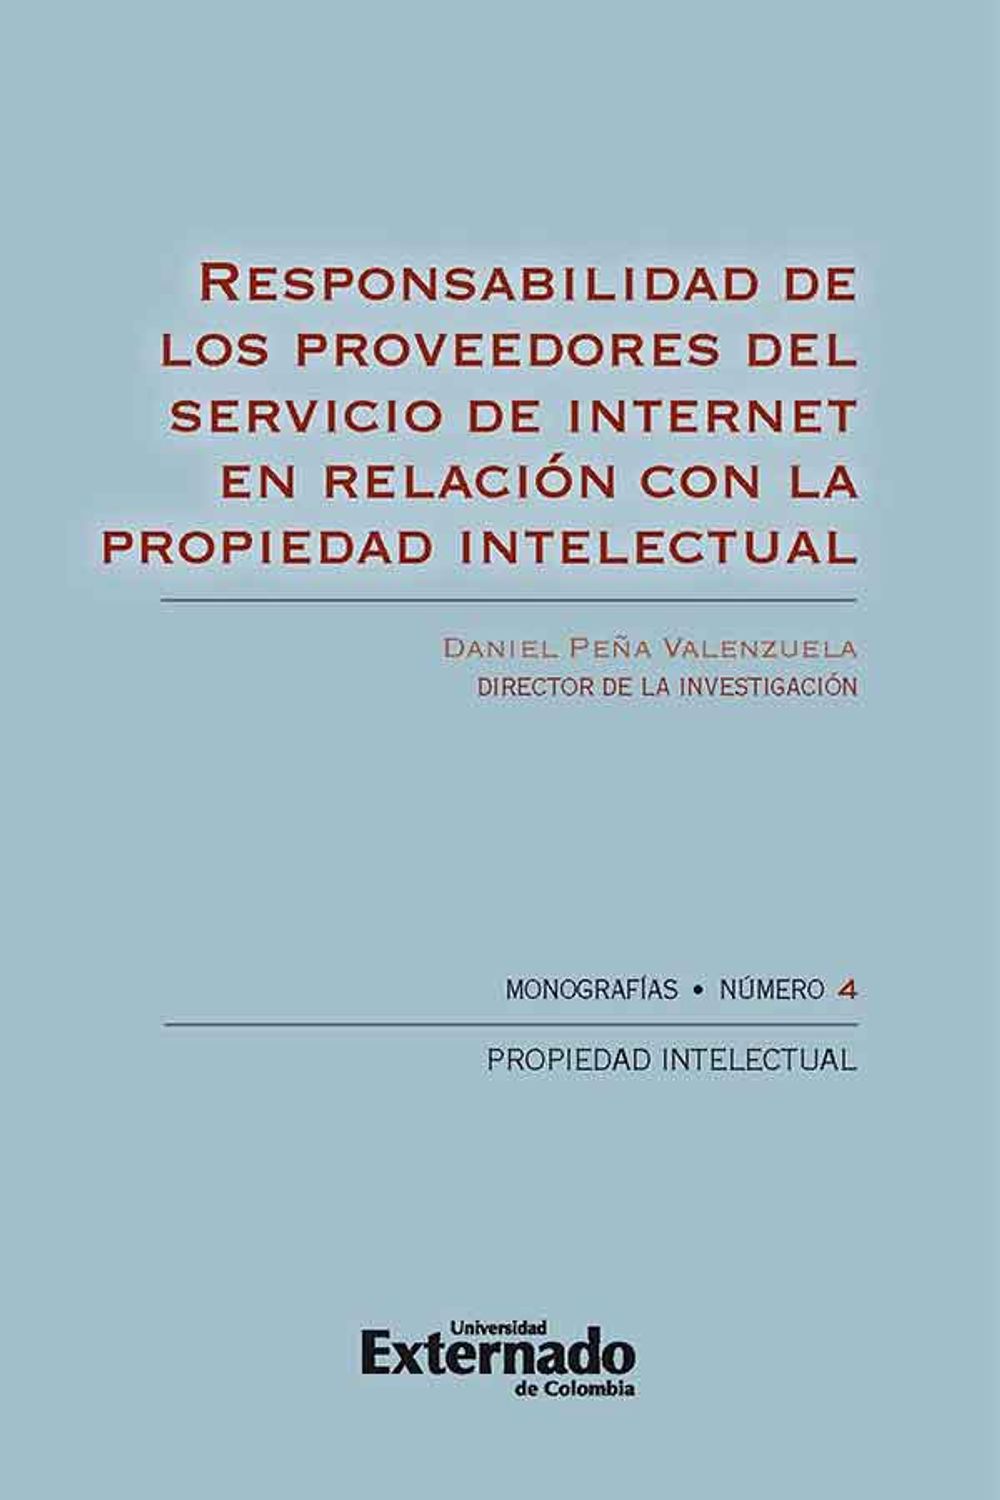 bw-responsabilidad-de-los-proveedores-del-servicio-de-internet-en-relacioacuten-con-la-propiedad-intelectual-u-externado-de-colombia-9789587722994